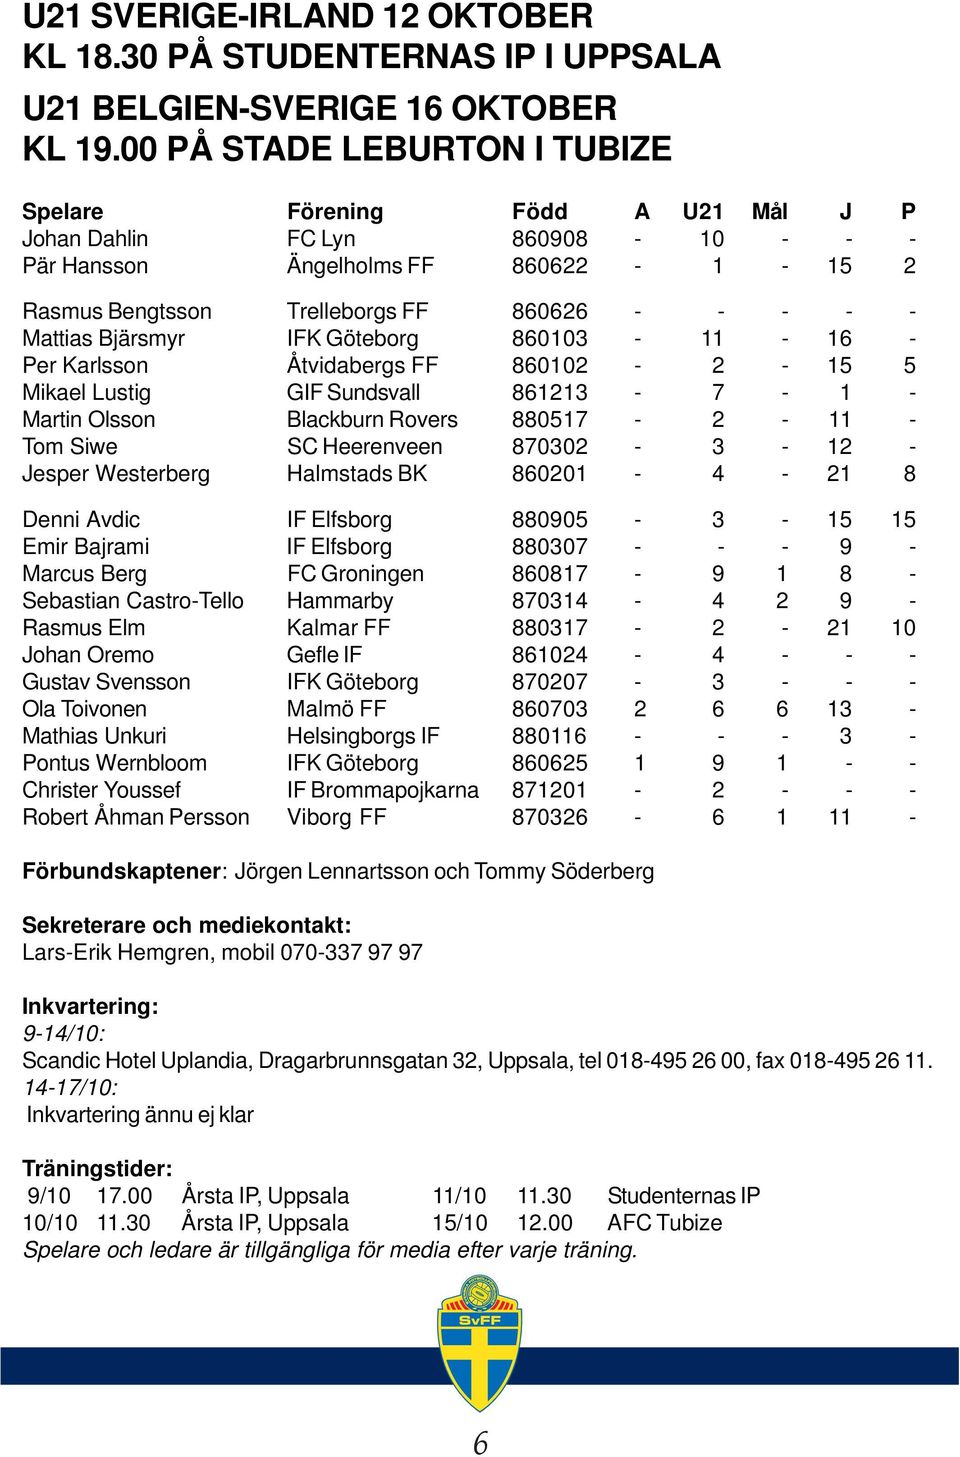 Mattias Bjärsmyr IFK Göteborg 860103-11 - 16 - Per Karlsson Åtvidabergs FF 860102-2 - 15 5 Mikael Lustig GIF Sundsvall 861213-7 - 1 - Martin Olsson Blackburn Rovers 880517-2 - 11 - Tom Siwe SC